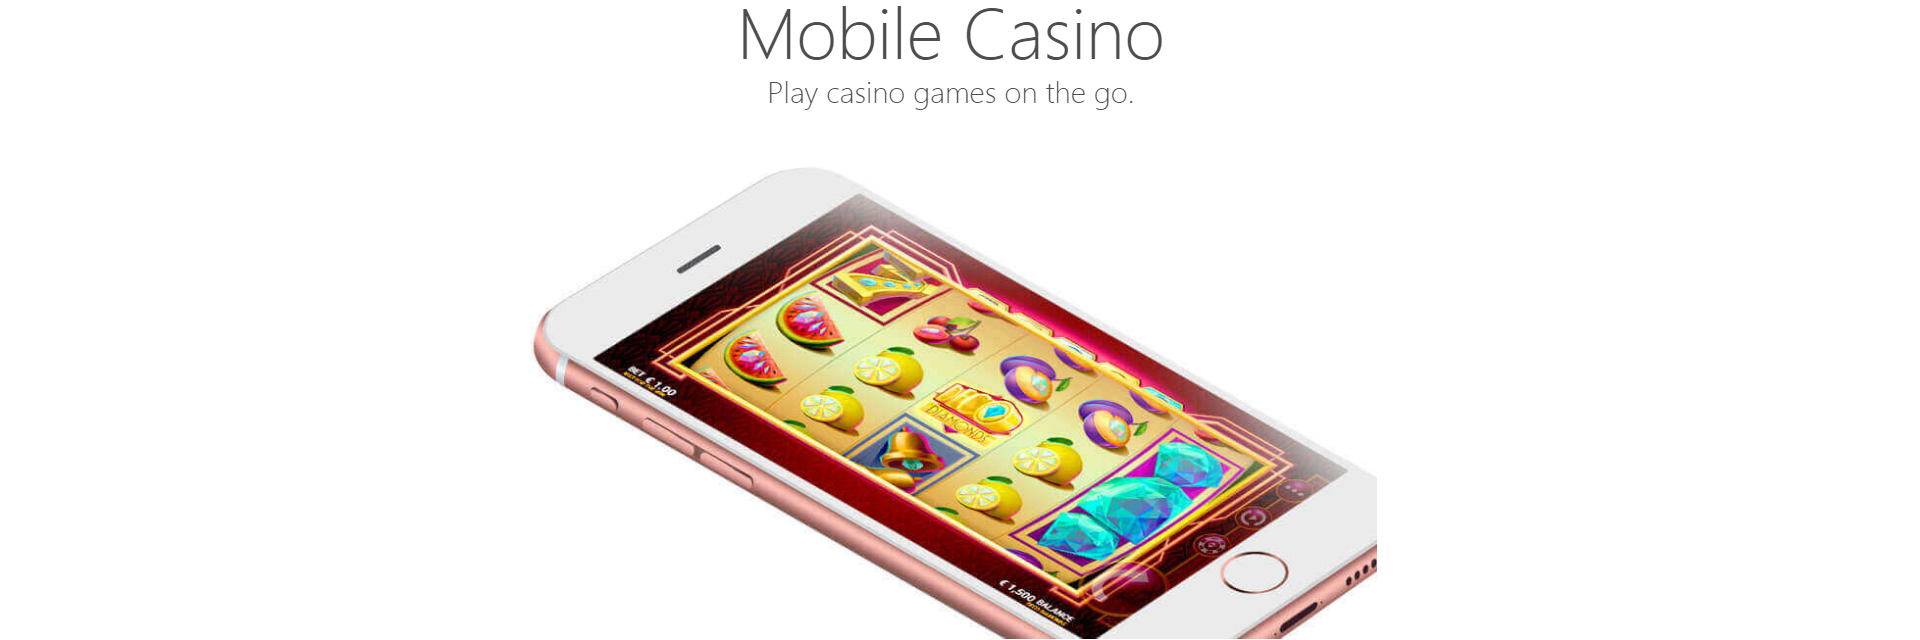 Ruby Fortune mobile casino.